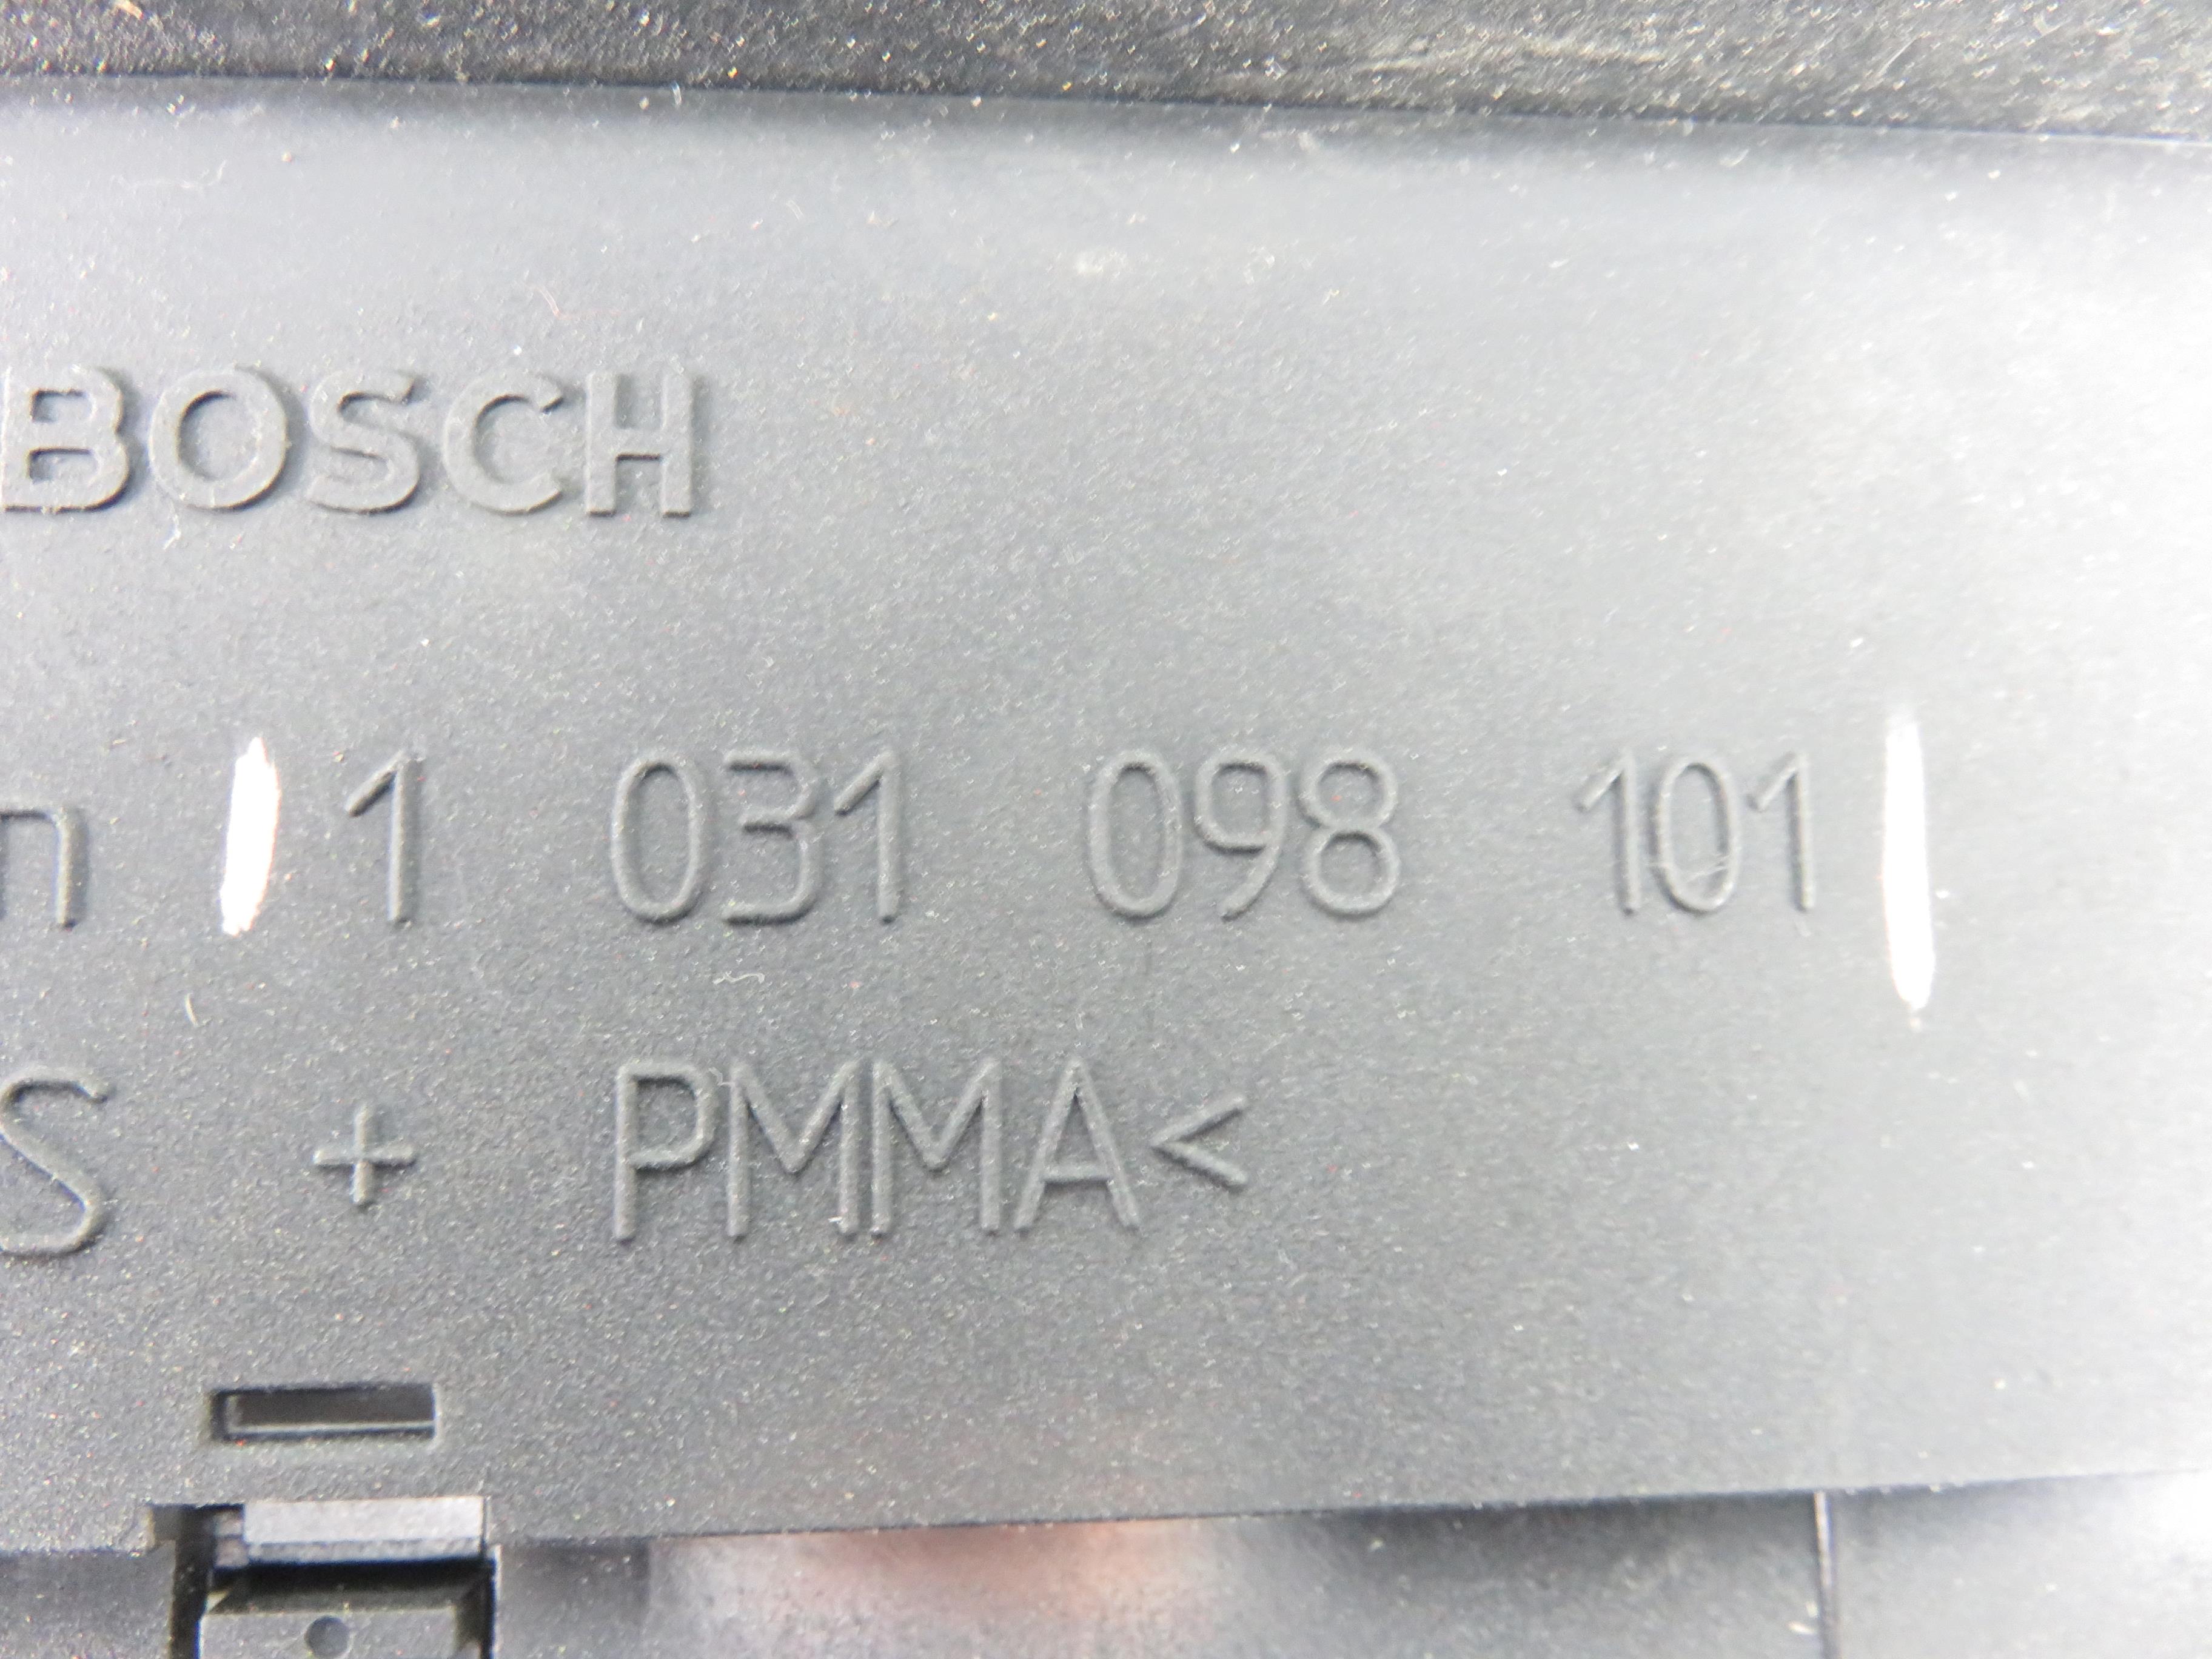 MERCEDES-BENZ B-Class W245 (2005-2011) Speedometer 1031098101 22964851